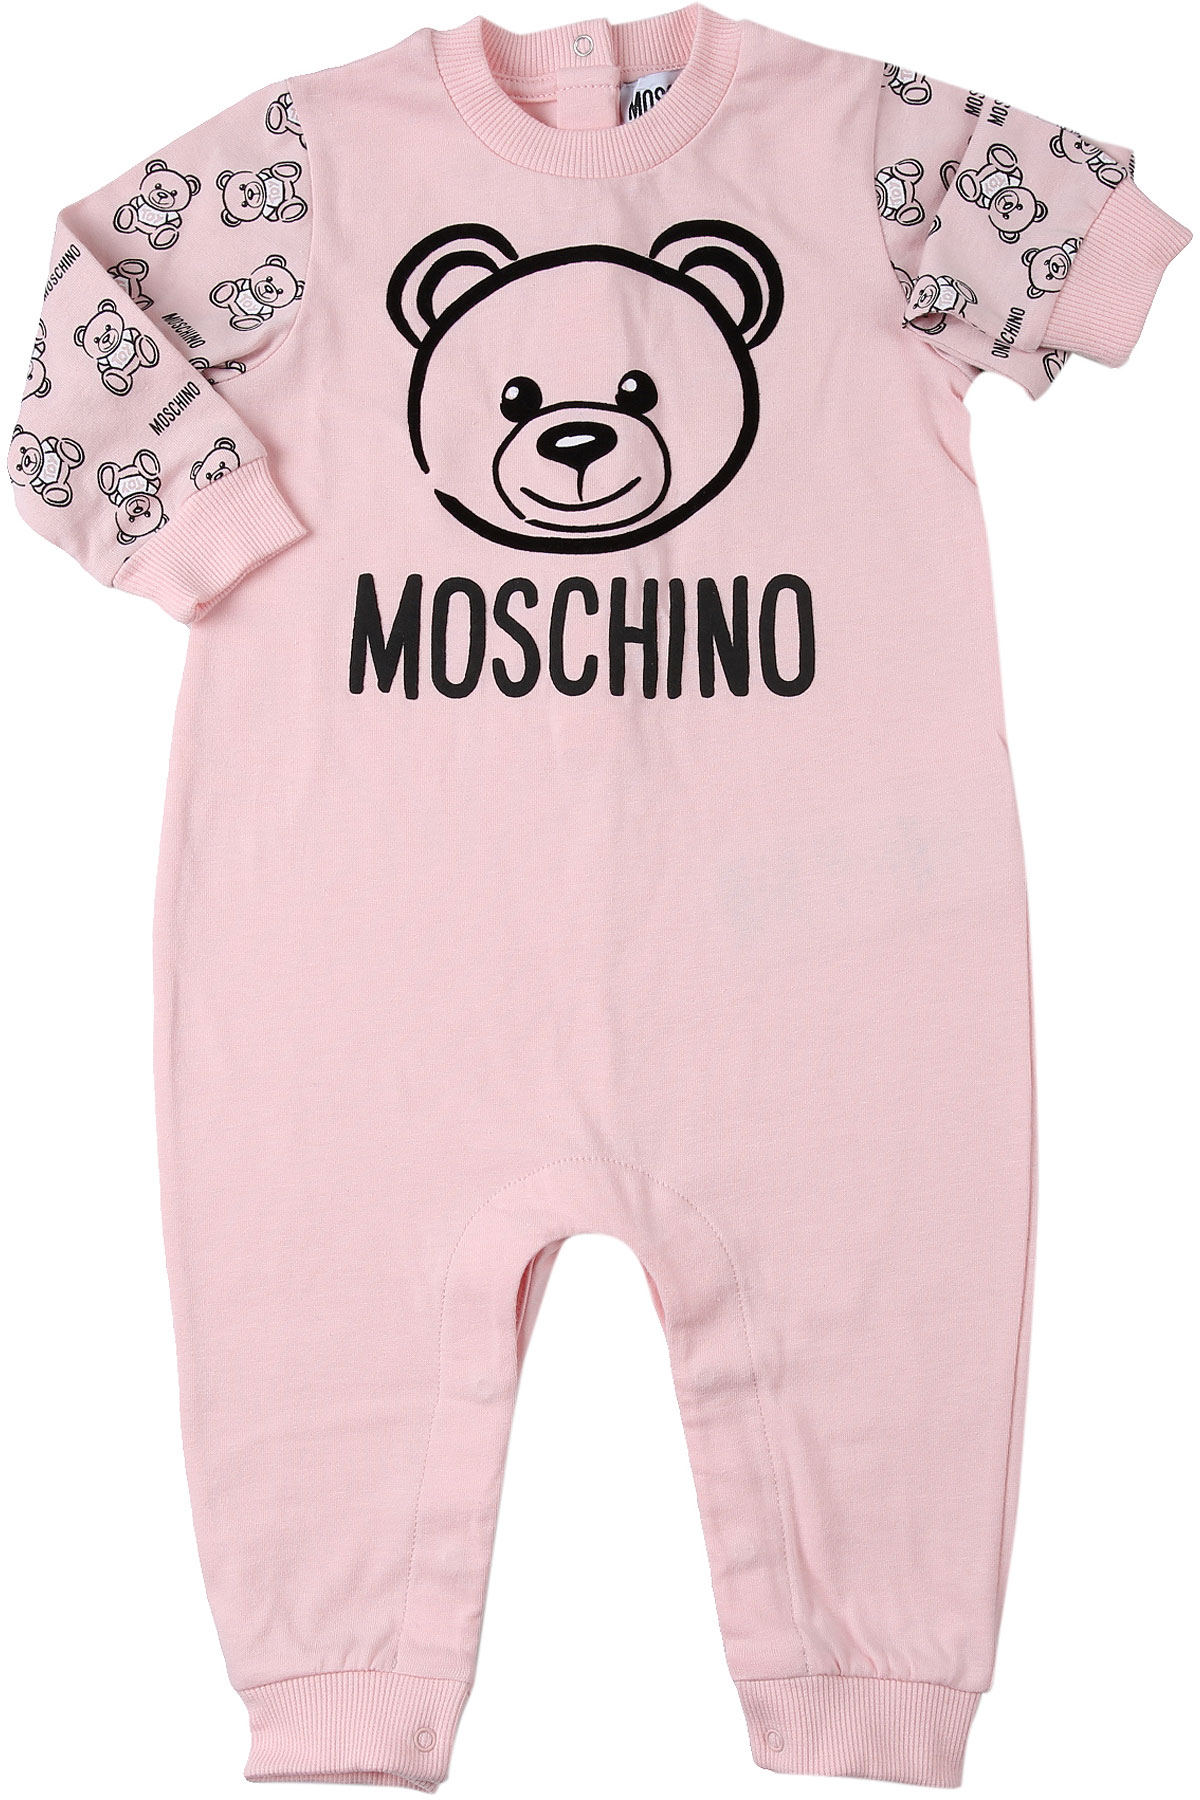 Moschino Baby Body & Strampelanzug für Mädchen Günstig im Sale, Pink, Baumwolle, 2017, 3M 6M 9M